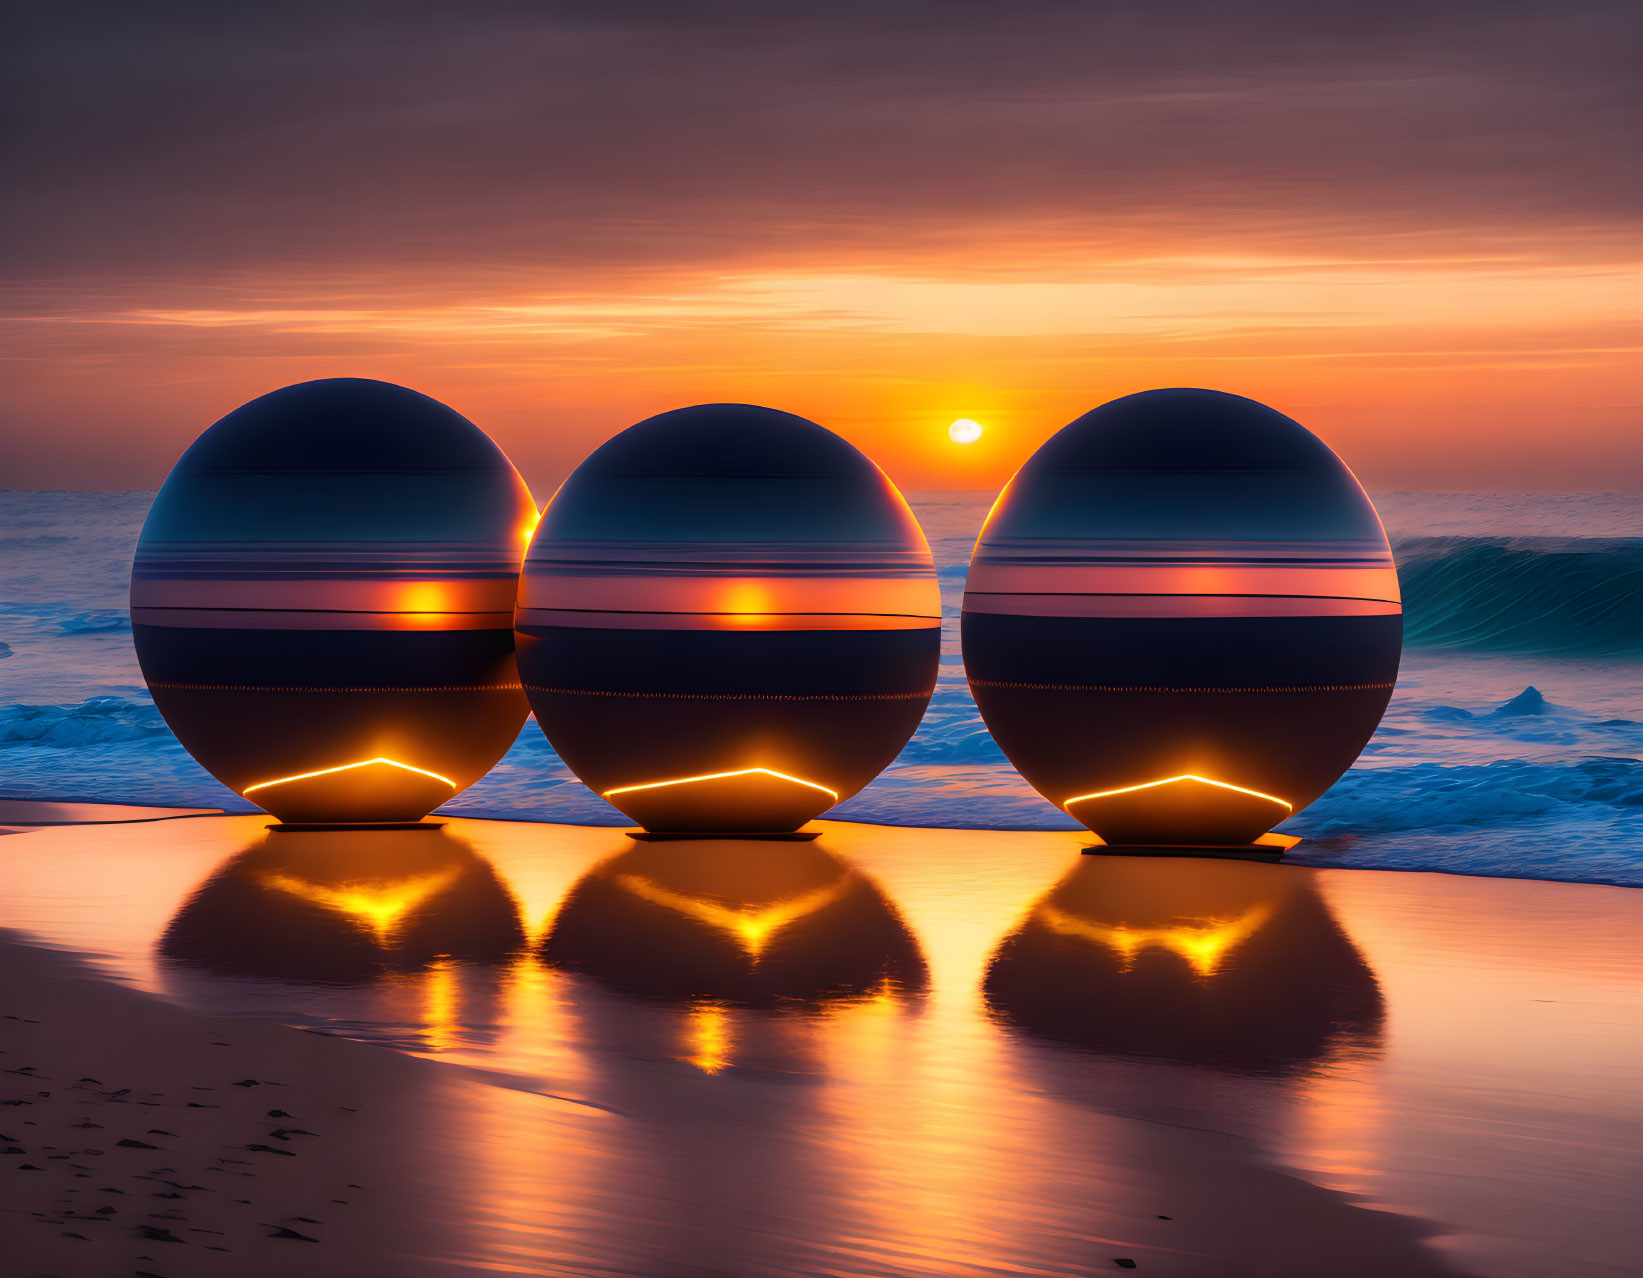 3 spheres